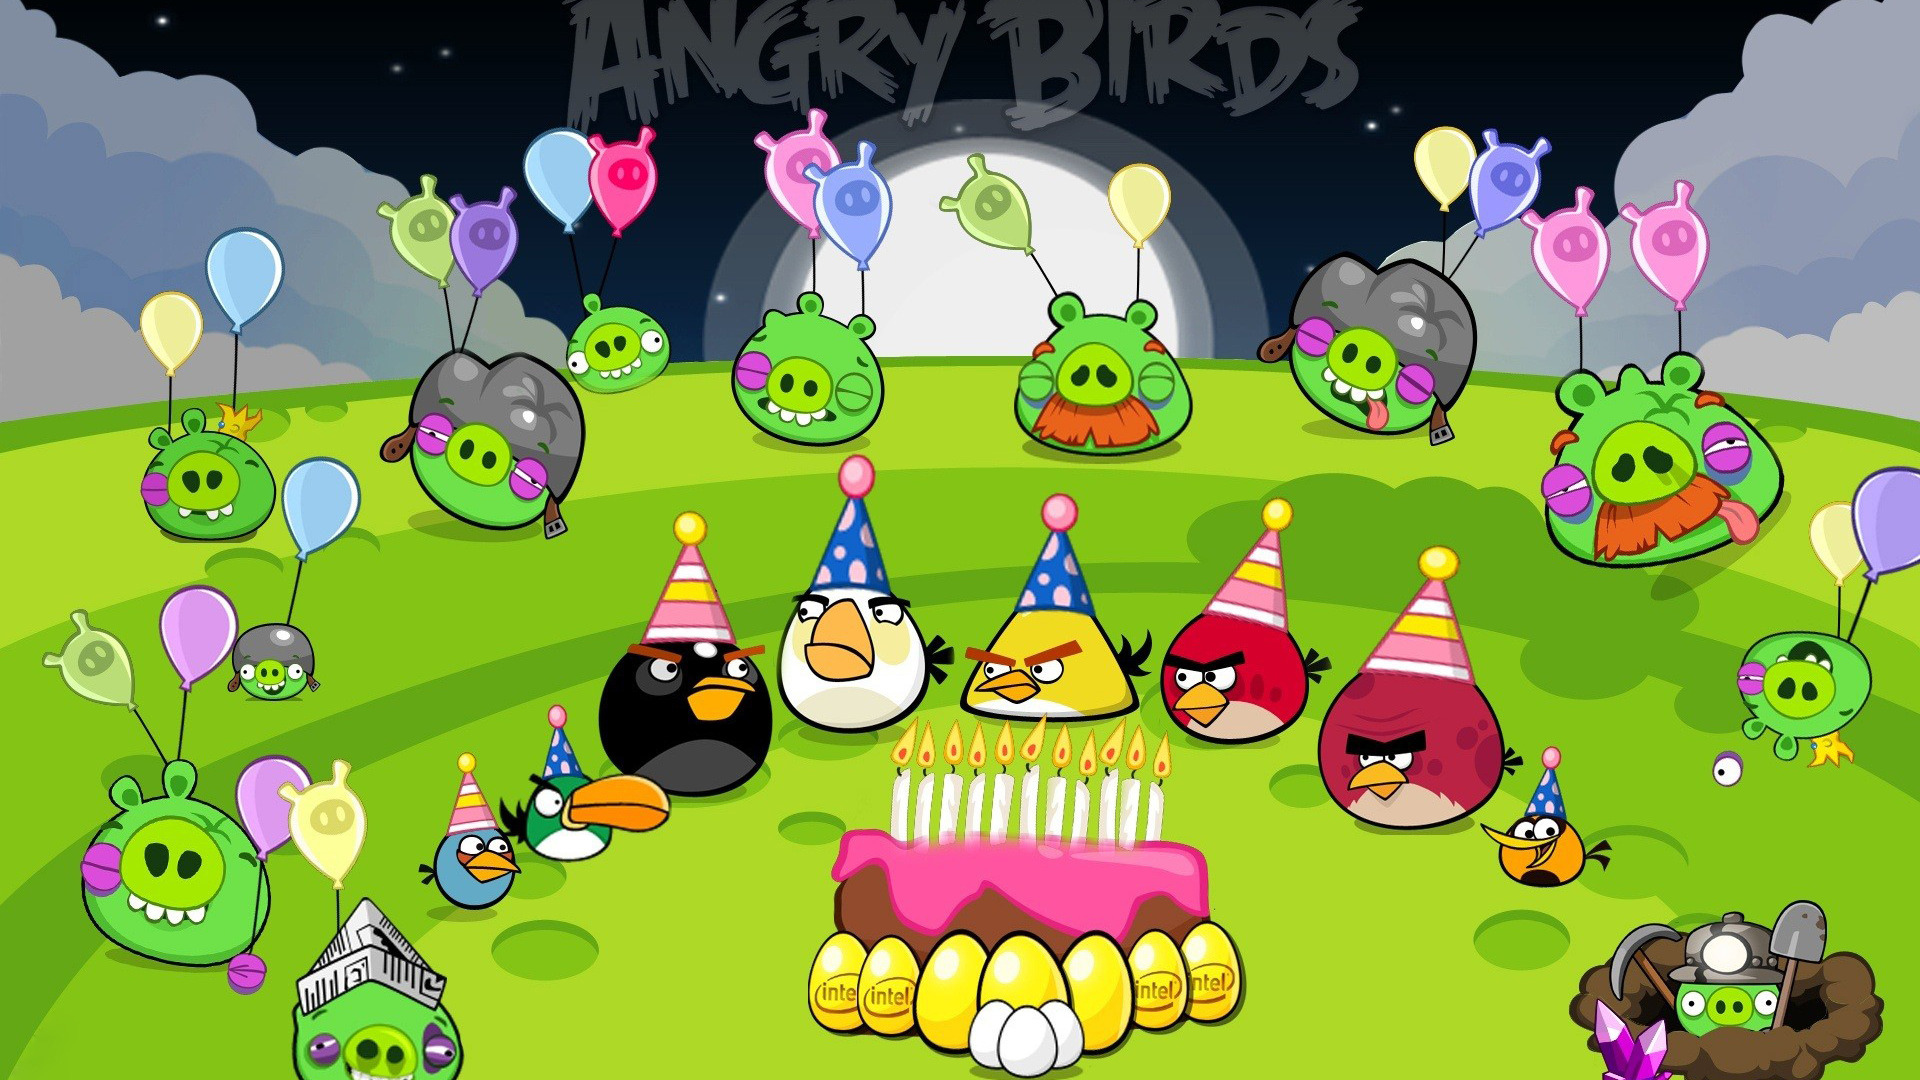 Ảnh nền Angry Birds chúc mừng sinh nhật đẹp